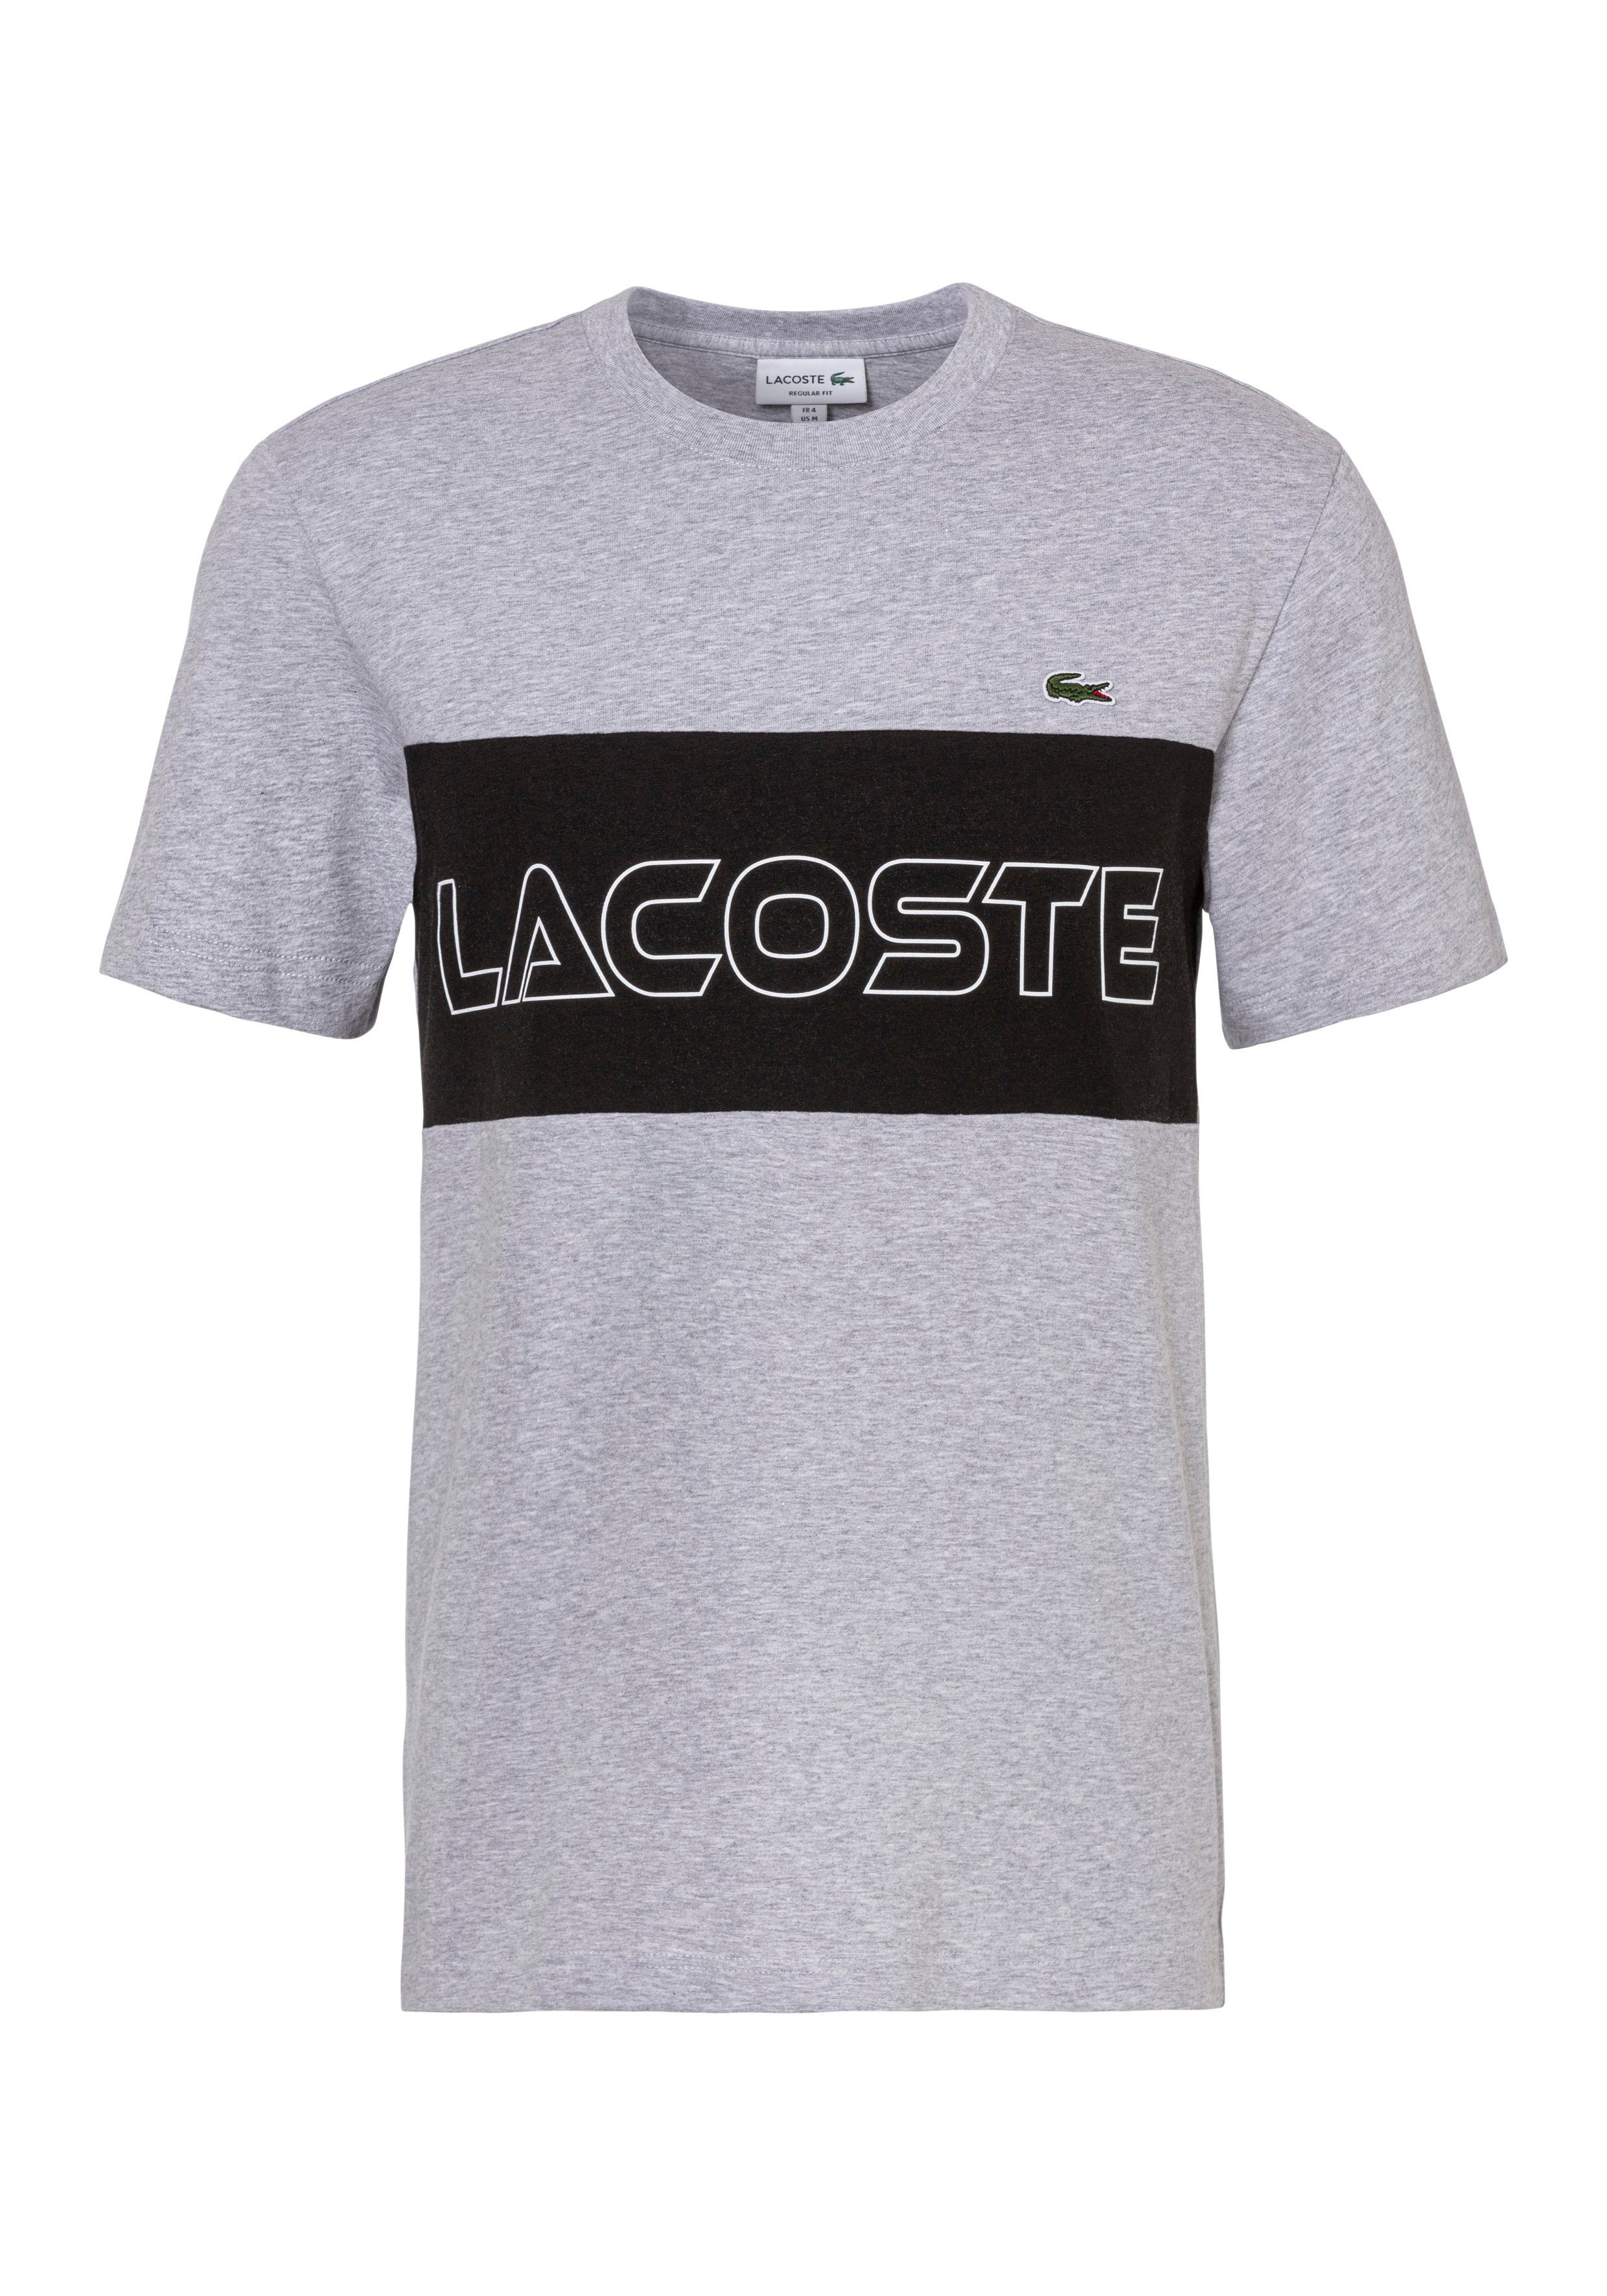 Lacoste T-Shirt T-SHIRT mit großem Print auf der Brust SILVER CHINE/BLACK